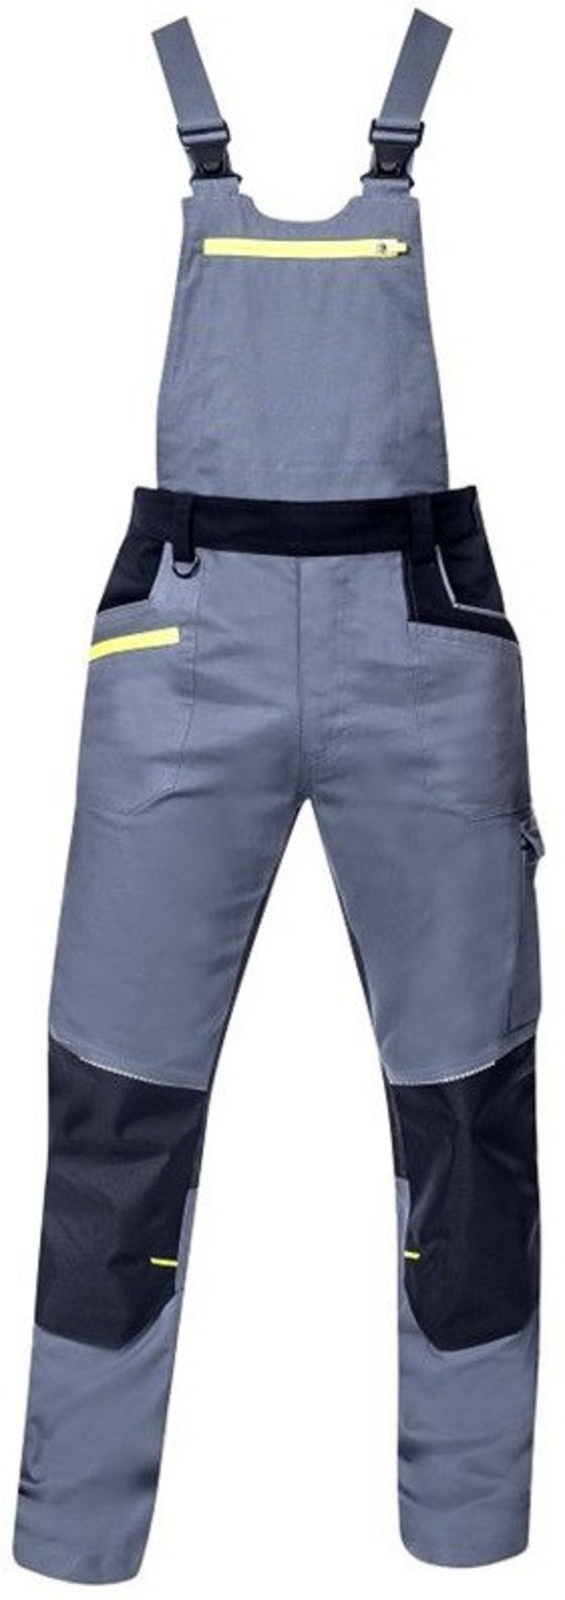 Pánske strečové montérkové nohavice na traky Ardon 4Xstretch - veľkosť: 56, farba: sivá